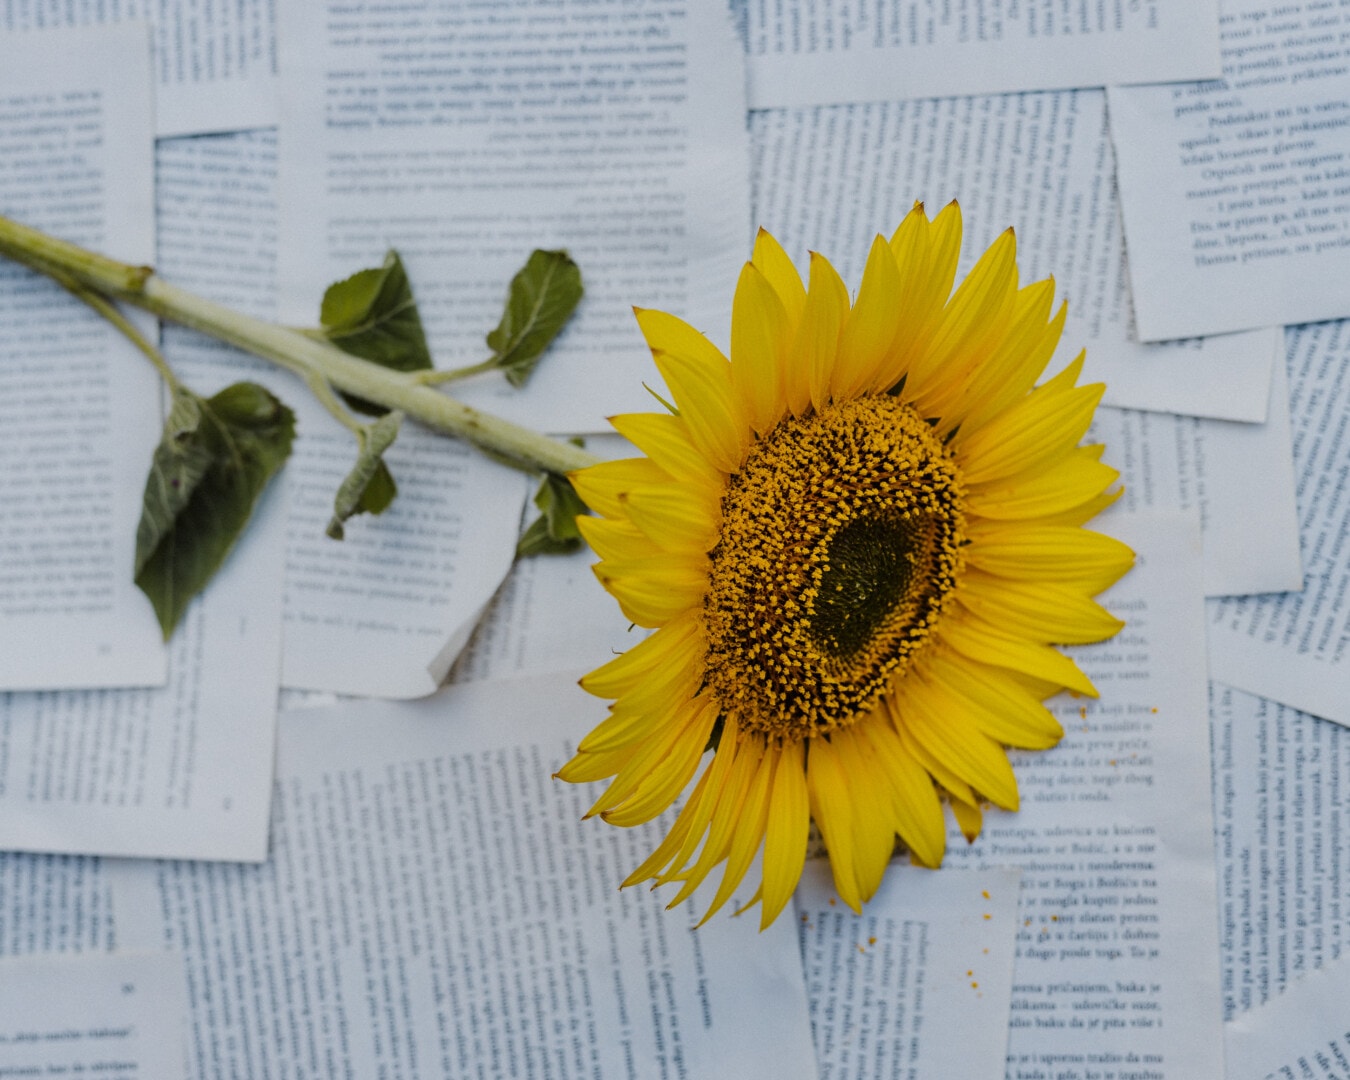 girasol, papel, Fotografía, periódico, estudio de la foto, planta, amarillo, flor, texto, brillante